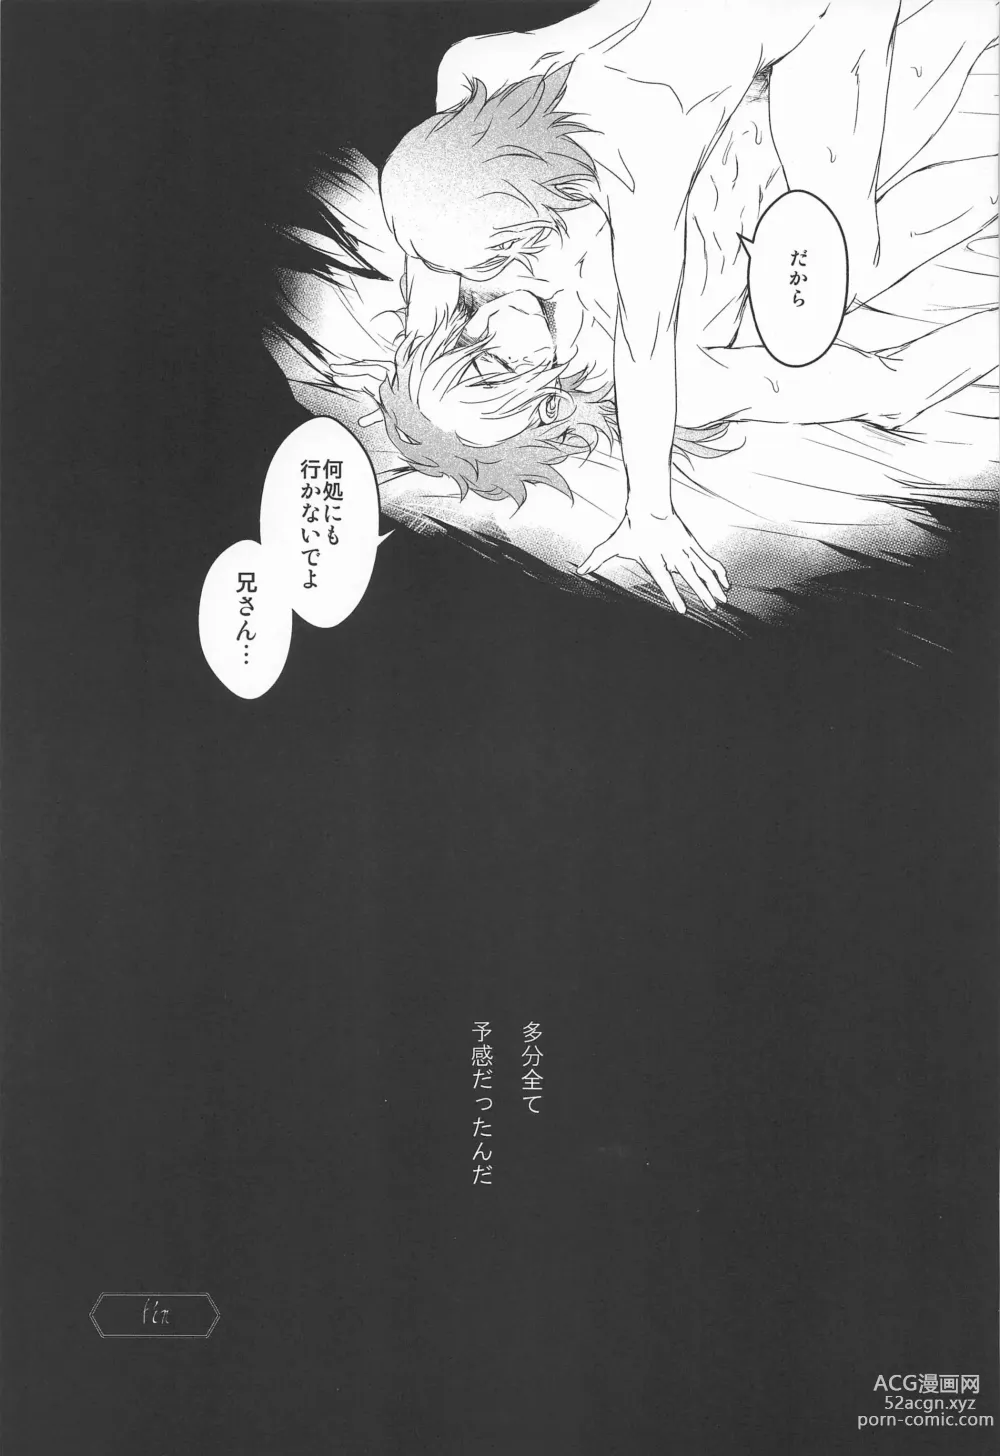 Page 46 of doujinshi Ai o Shiranai Kodomo-tachi  - Loveless Children